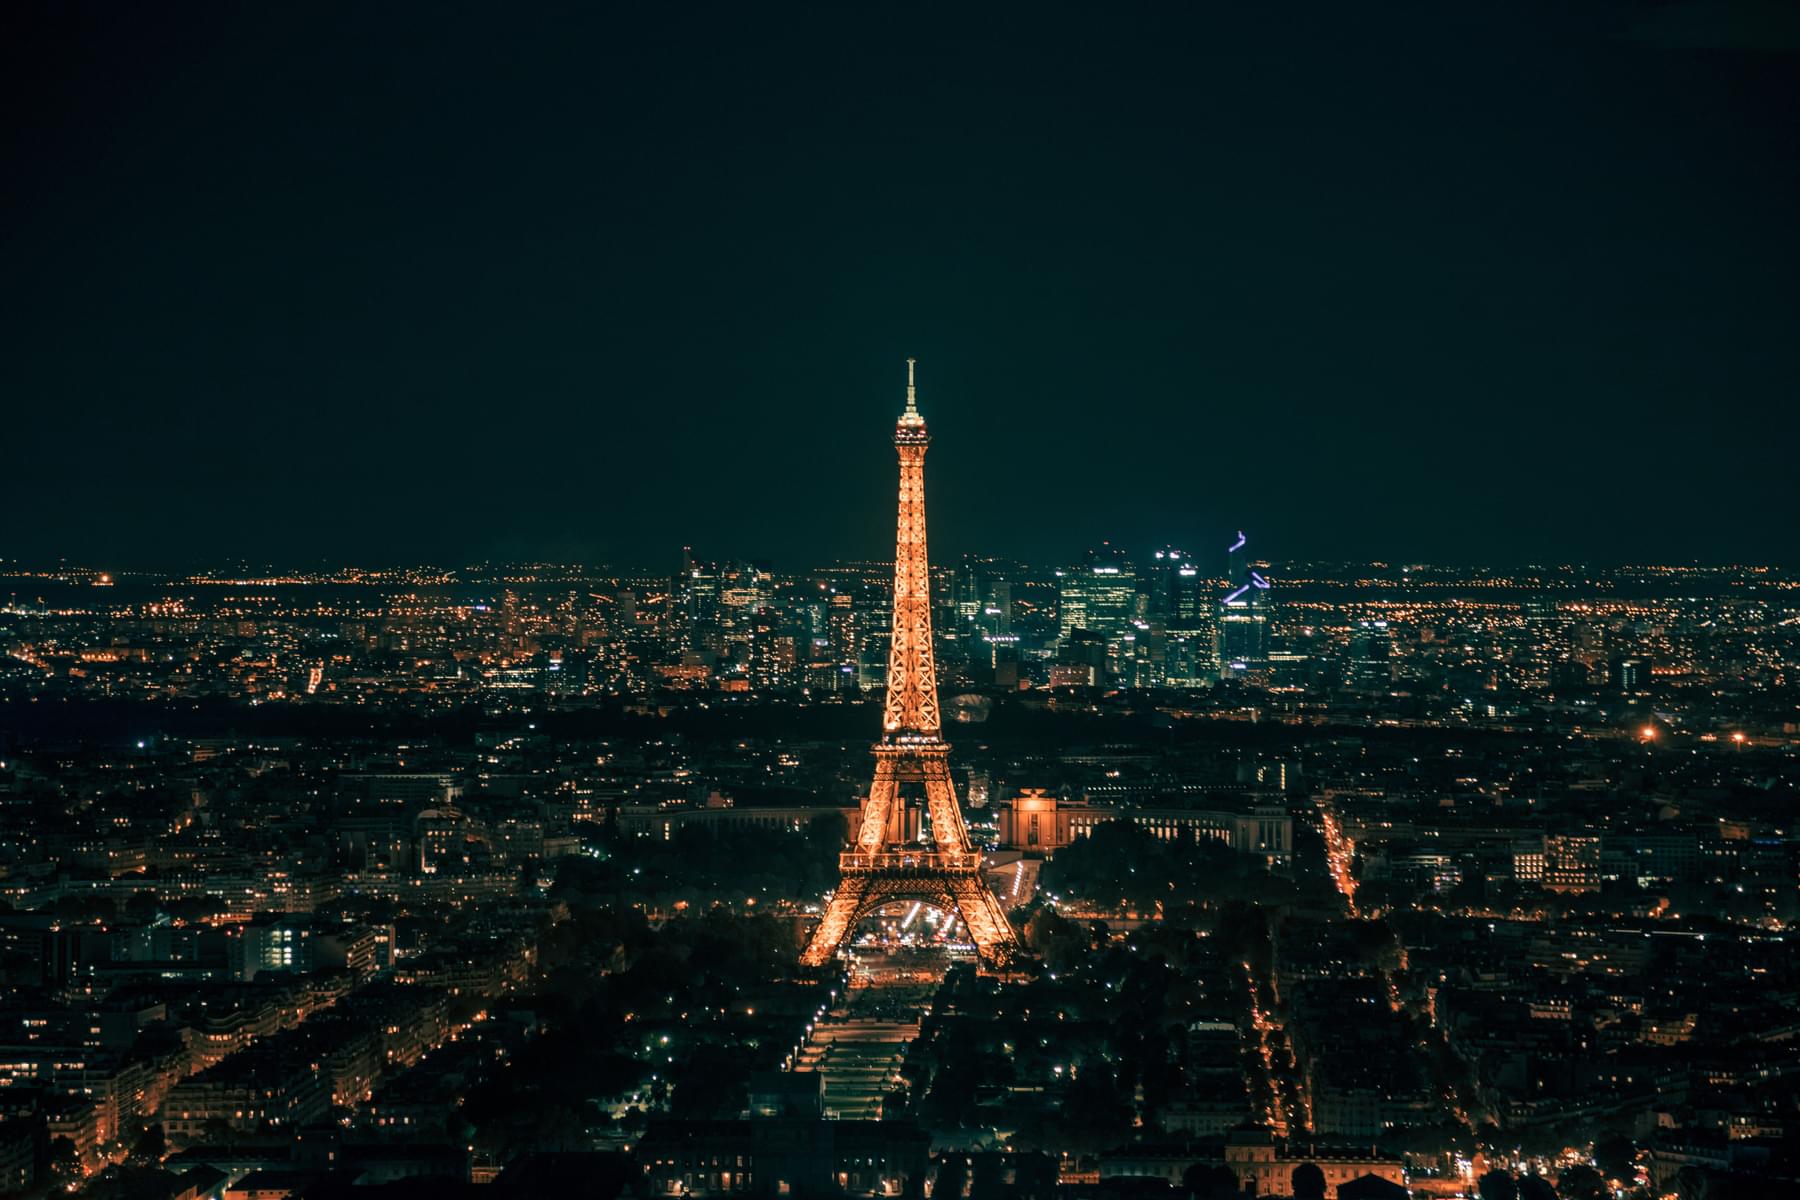 Enjoy the Eiffel Tower Light Show